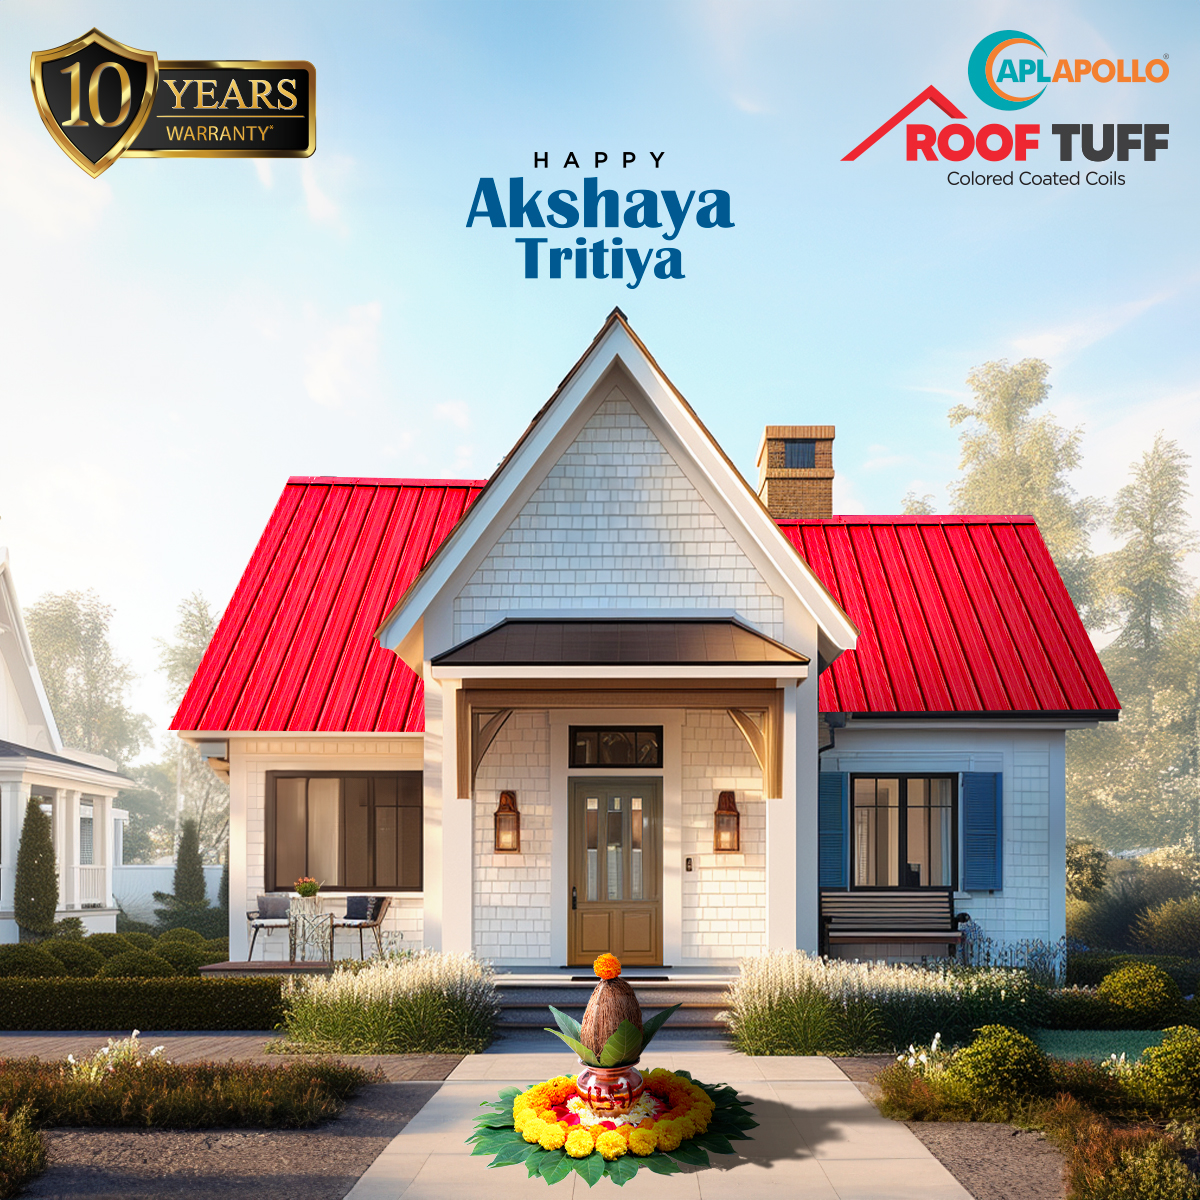 Wishing you a Akshaya Tritiya filled with wealth, health, and happiness.

#AkshayaTritiya #RoofTuff #APLApollo #CoatedSteel